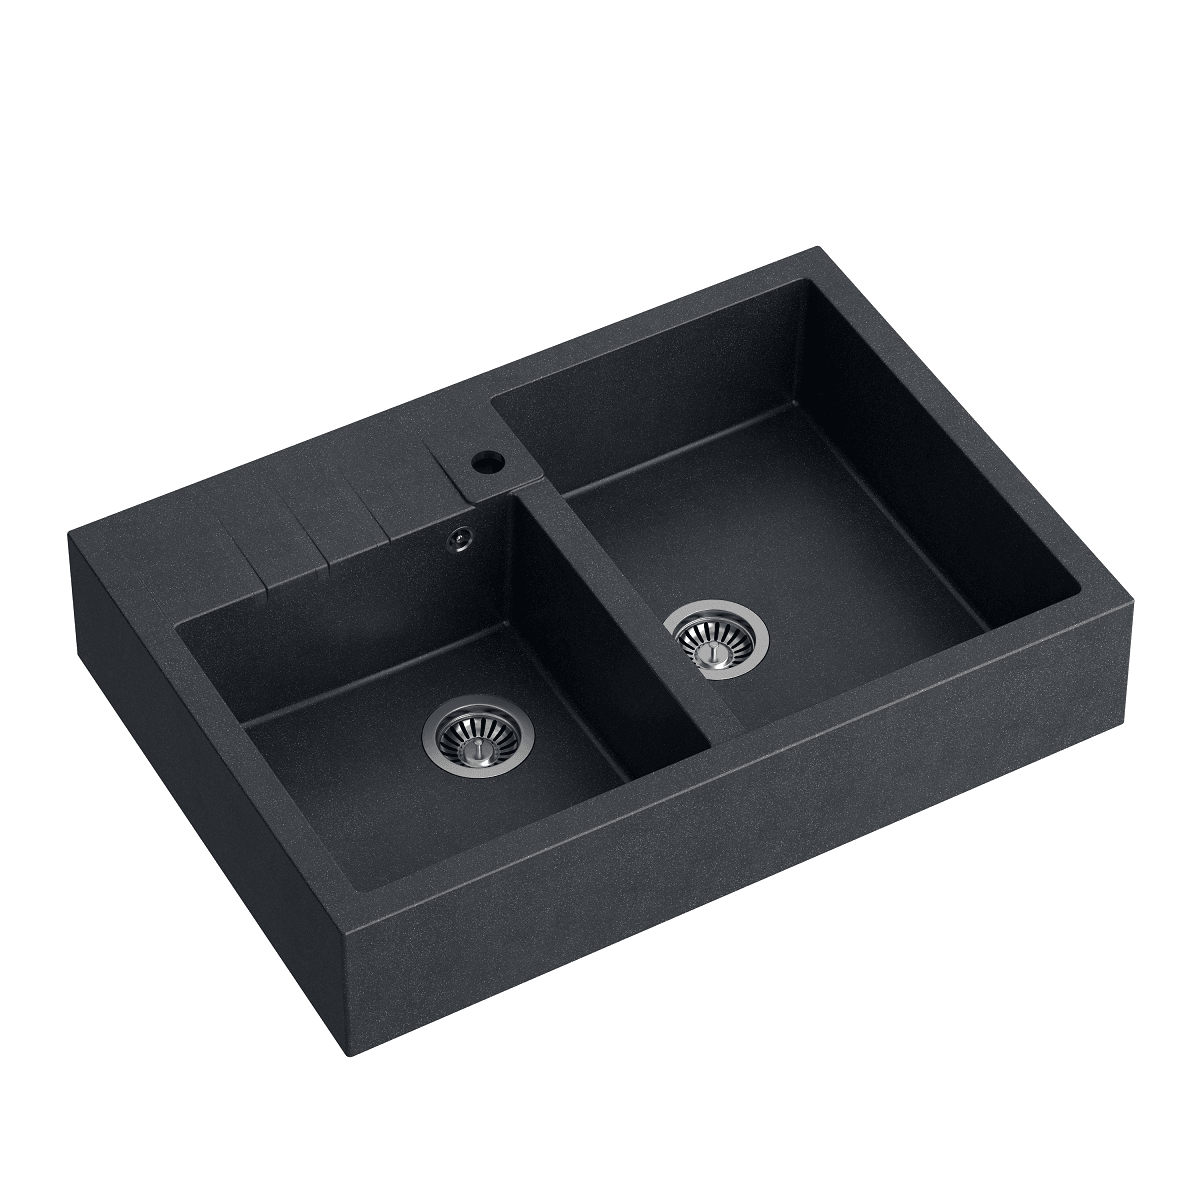 Quadron Bill 120 Black, belfast granite sink - Olif